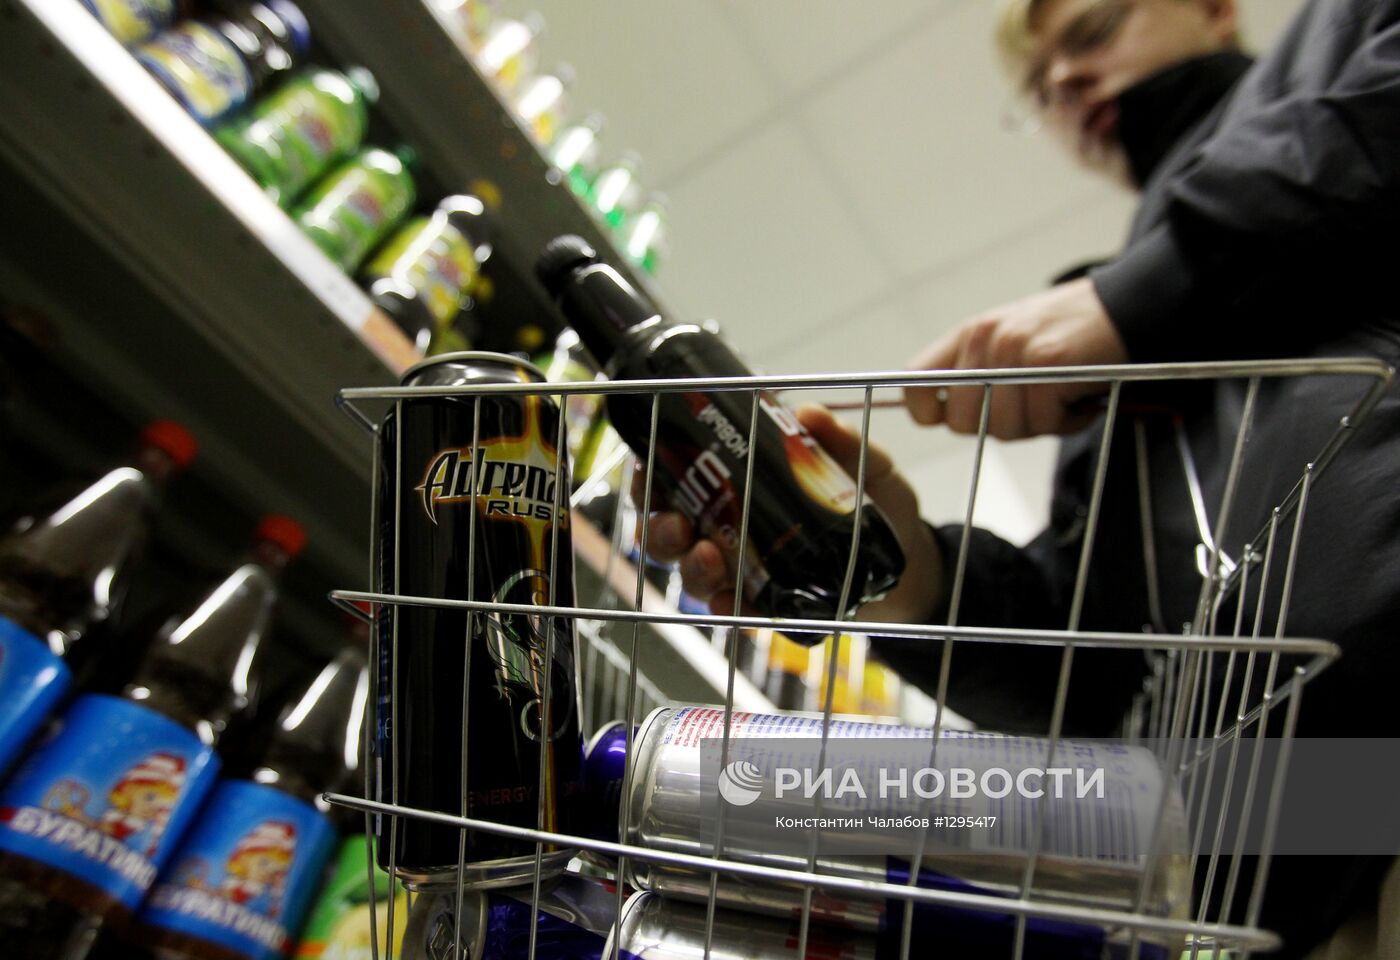 Продажа энергетических напитков в России